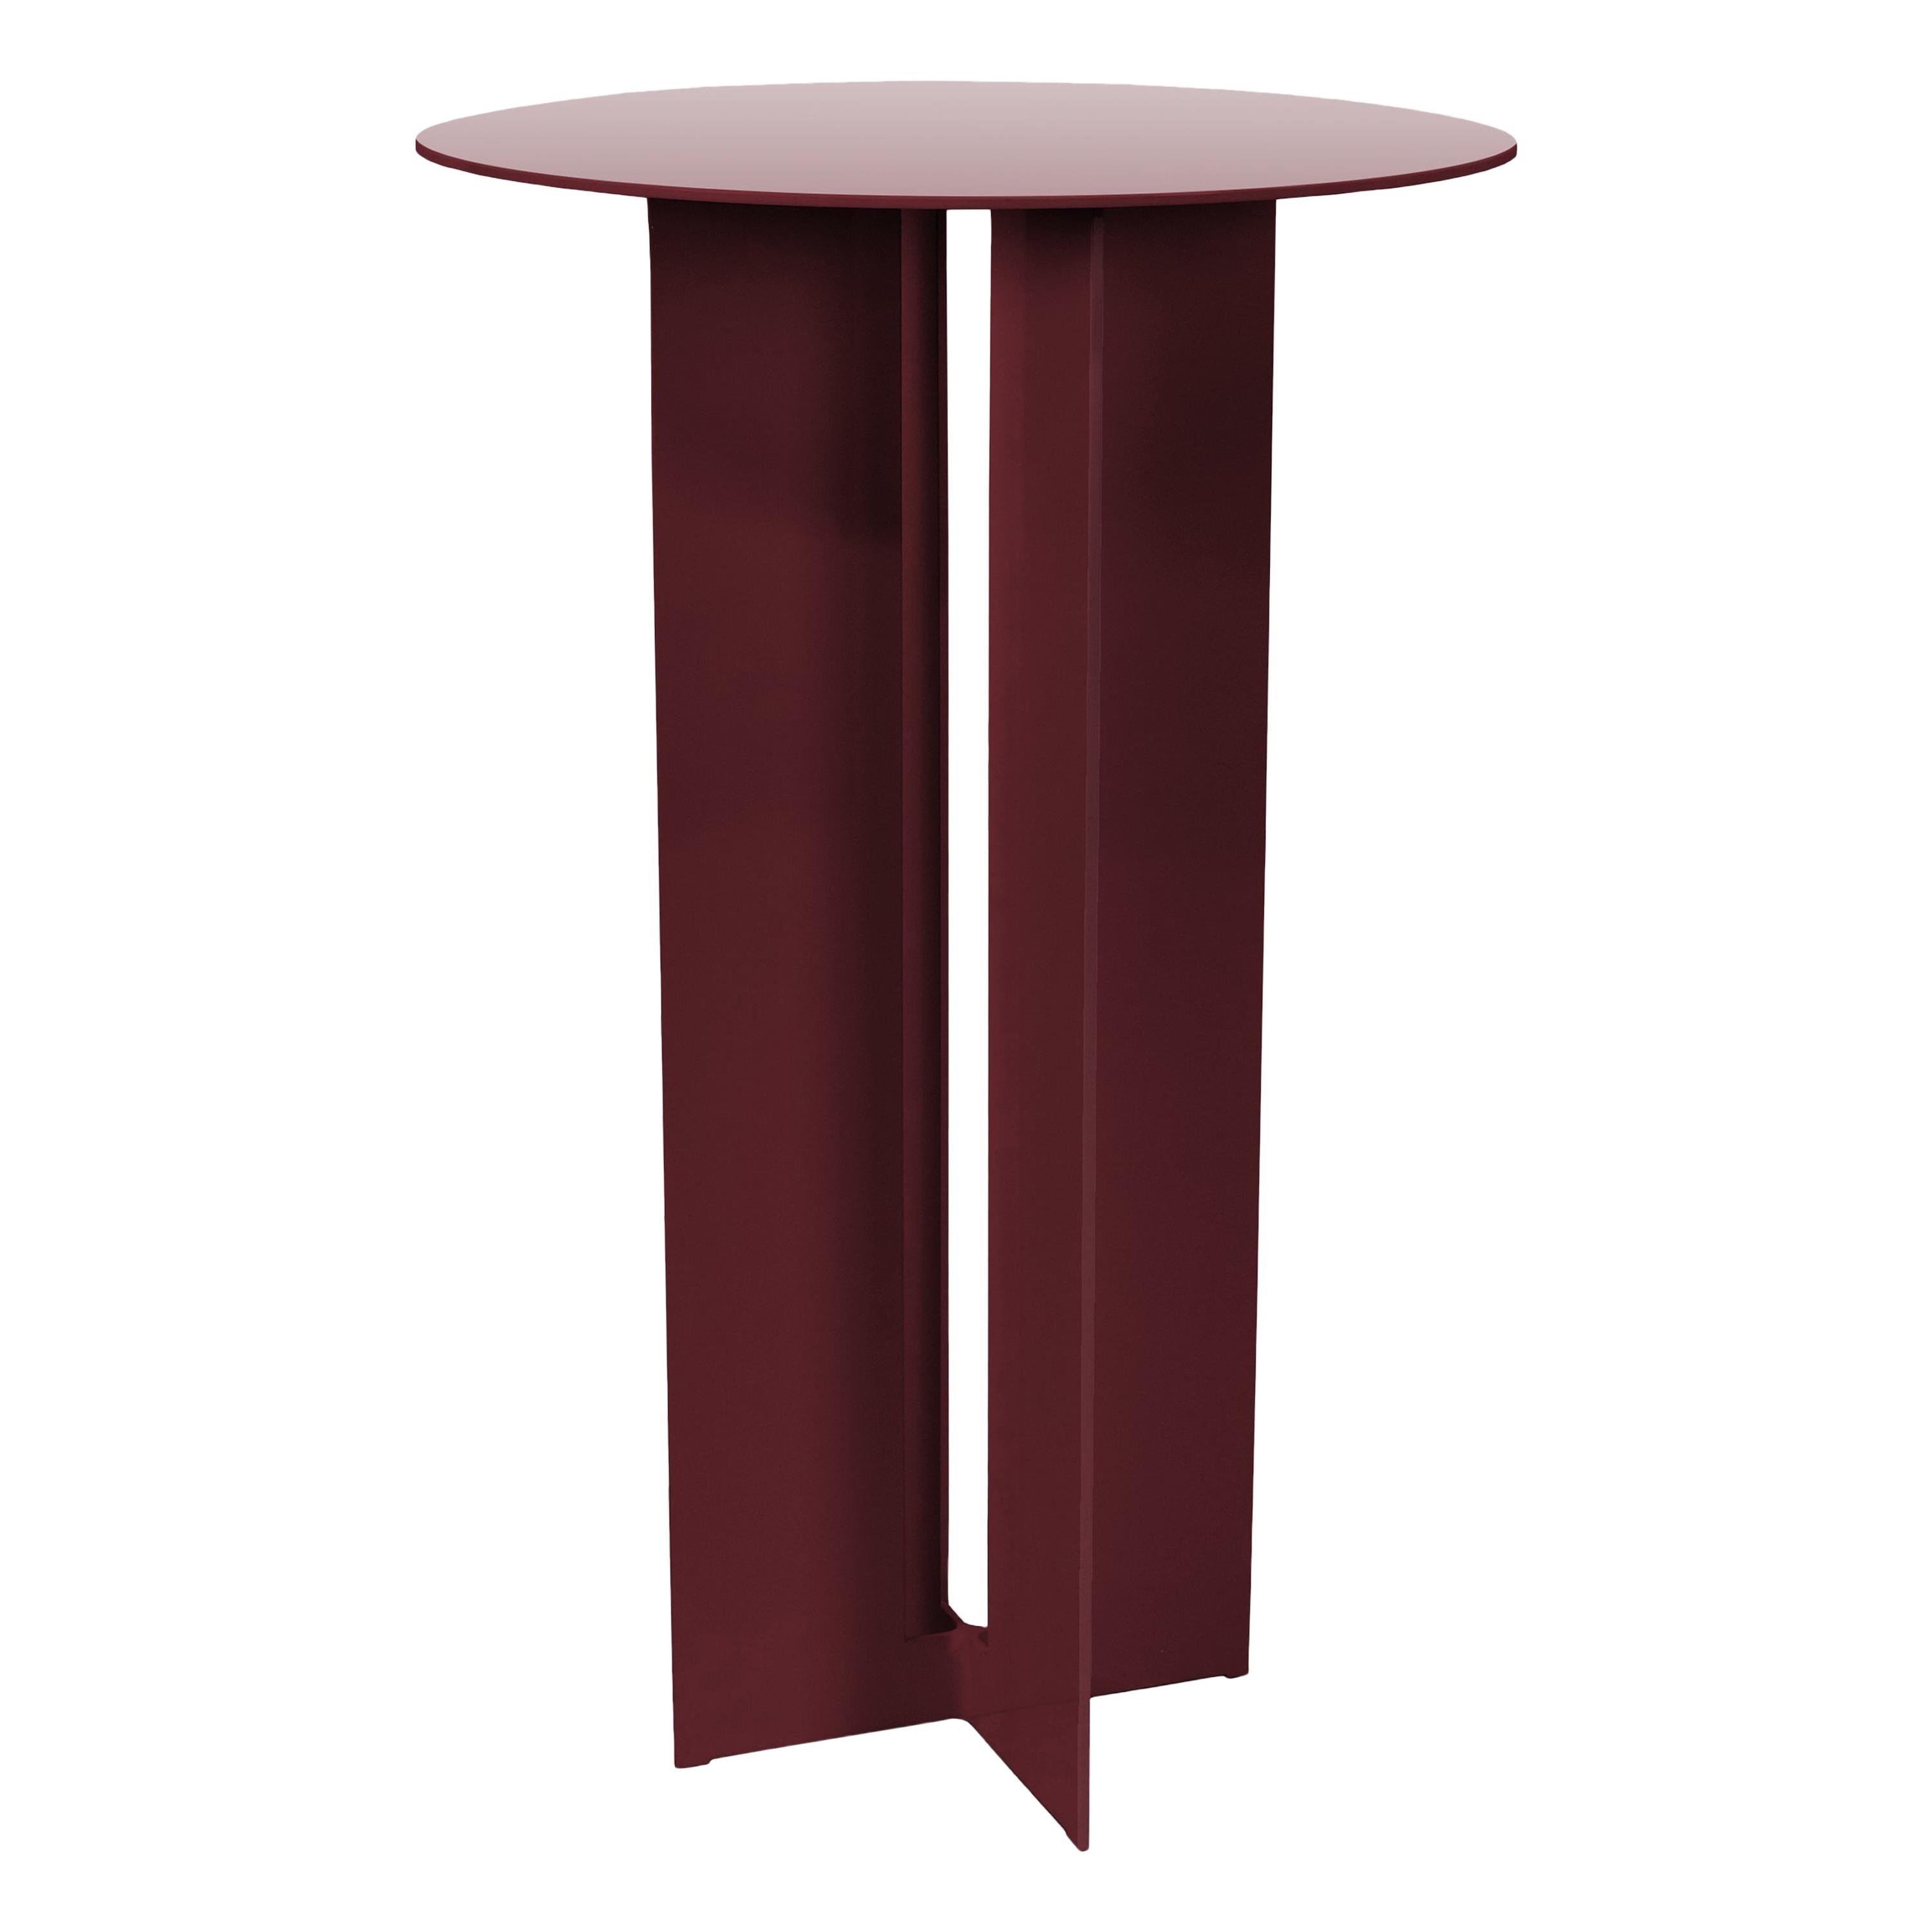 Cafe-Tisch aus burgunderrotem Aluminium von Mers